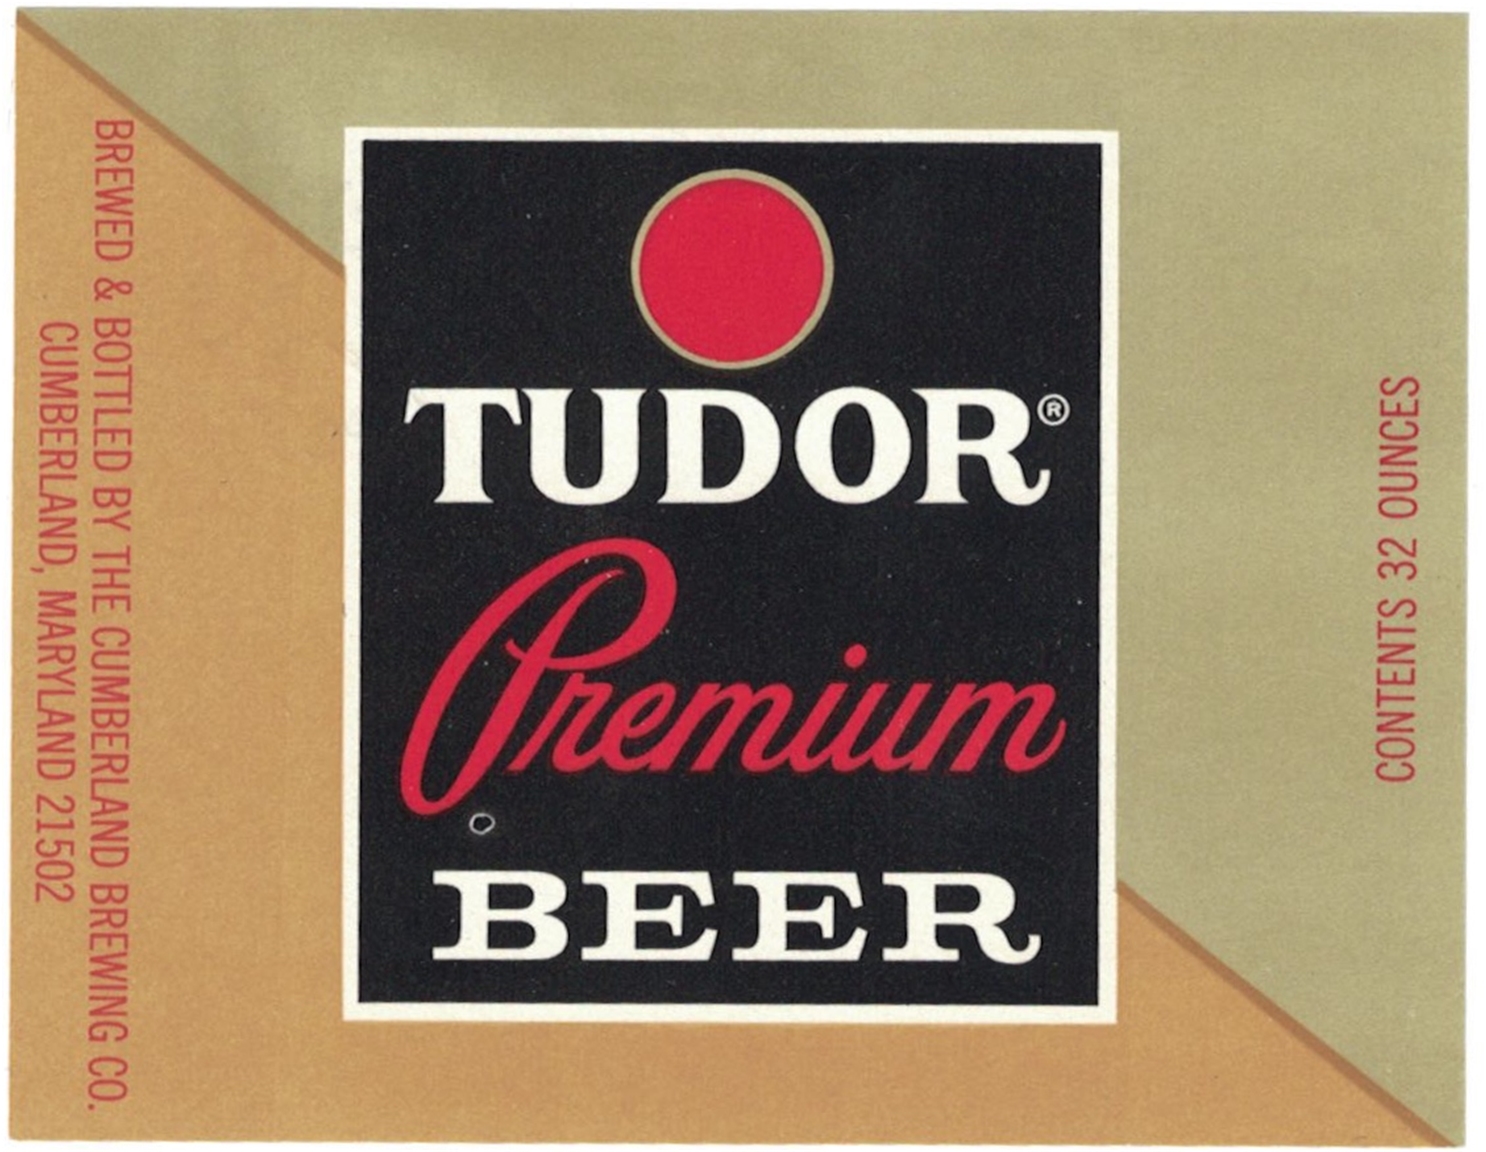 Tudor Premium Beer Label